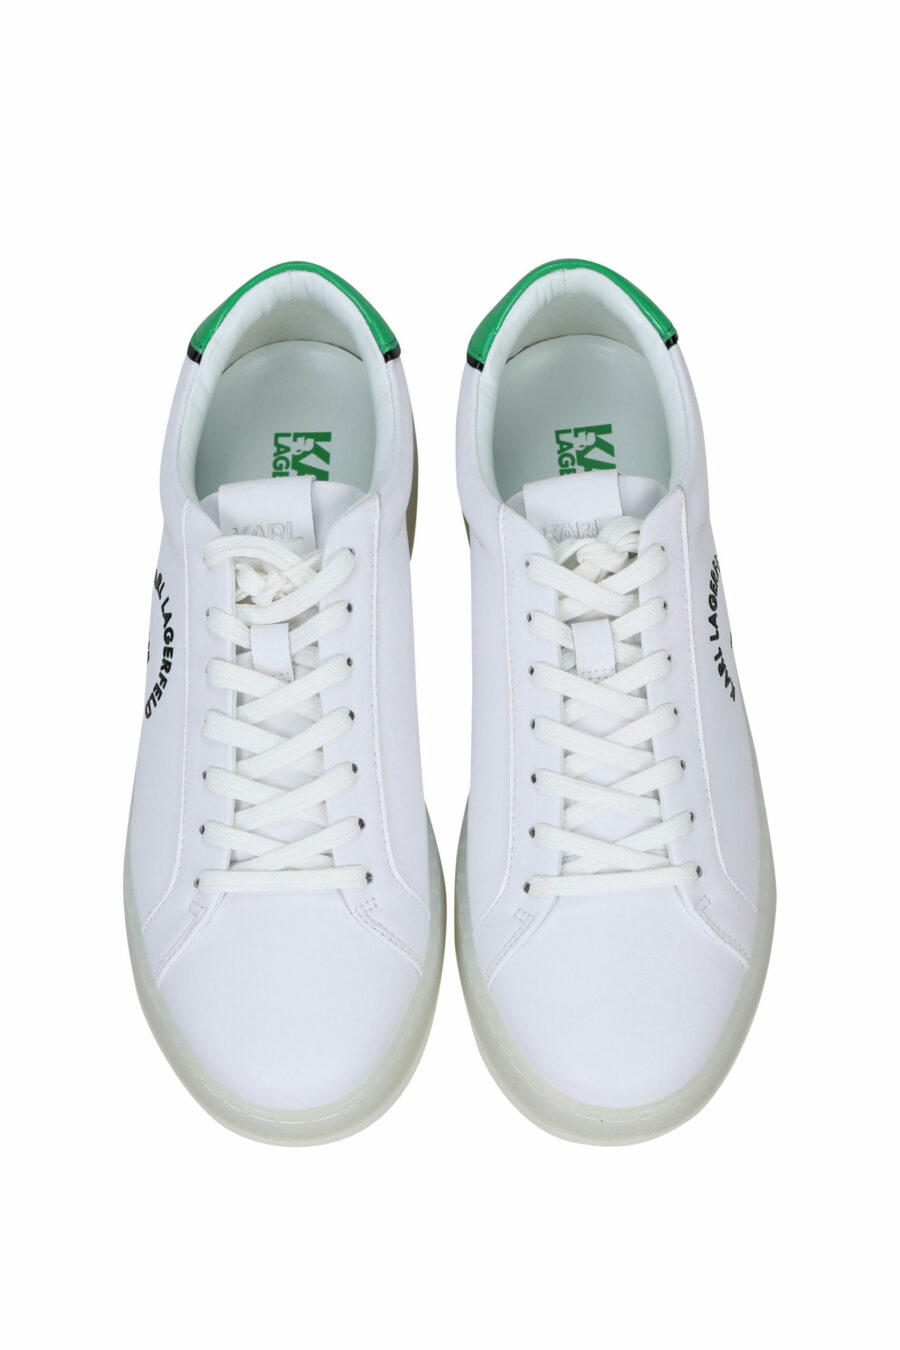 Zapatillas blancas con detalle verde y logo "st rue guillaume" - 5059529291289 4 scaled